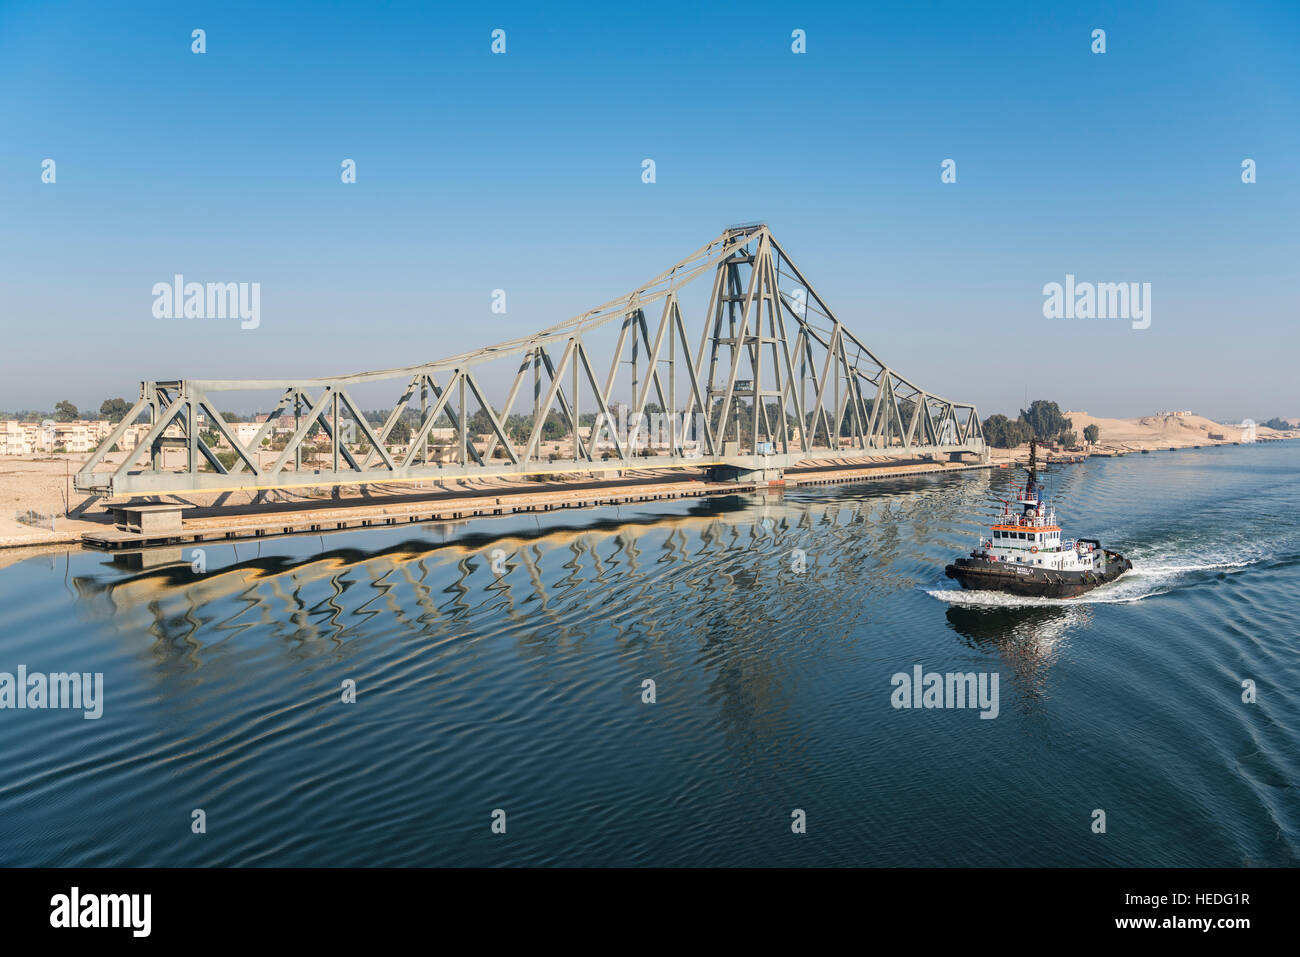 Tug Boat passes El Ferdan Railway Bridge in the Suez Canal near Ismailia, Egypt Stock Photo